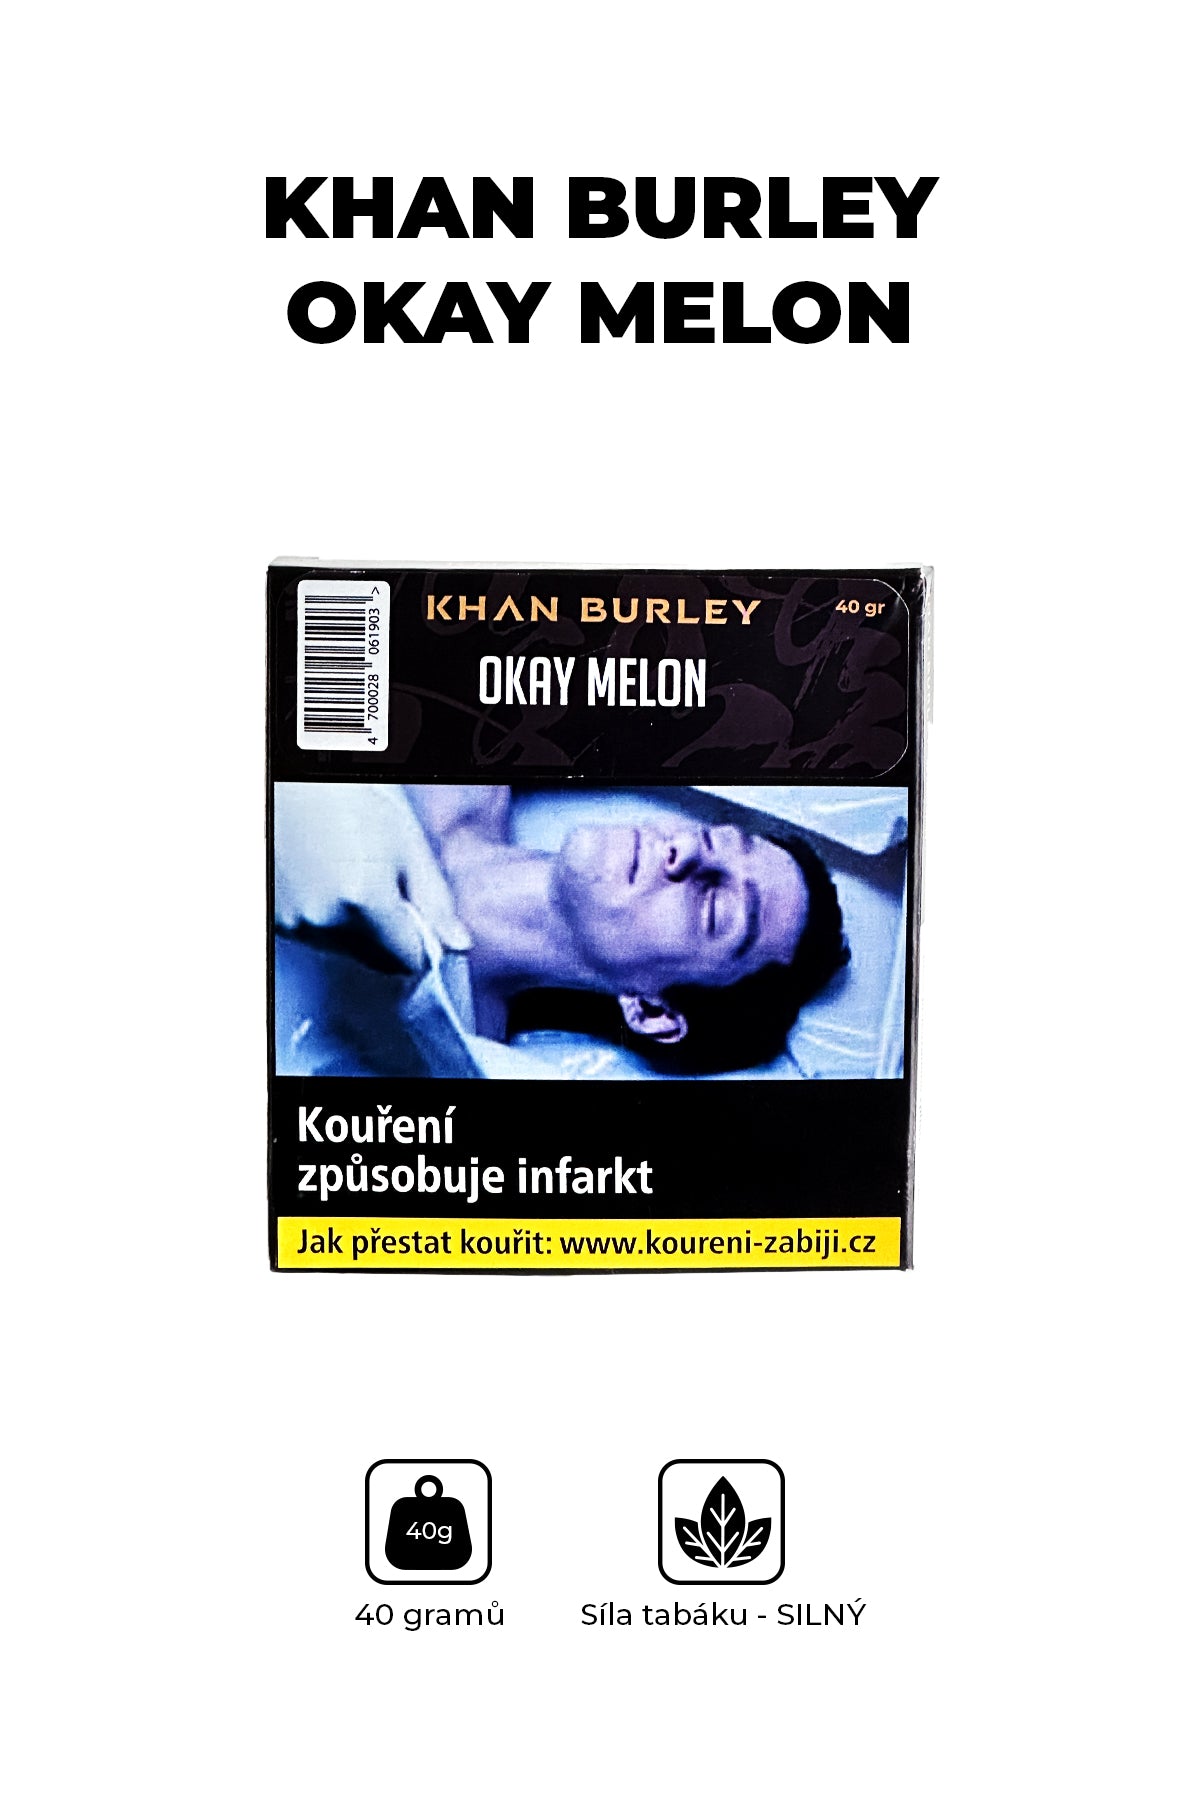 Tabák - Khan Burley 40g - Okay Melon